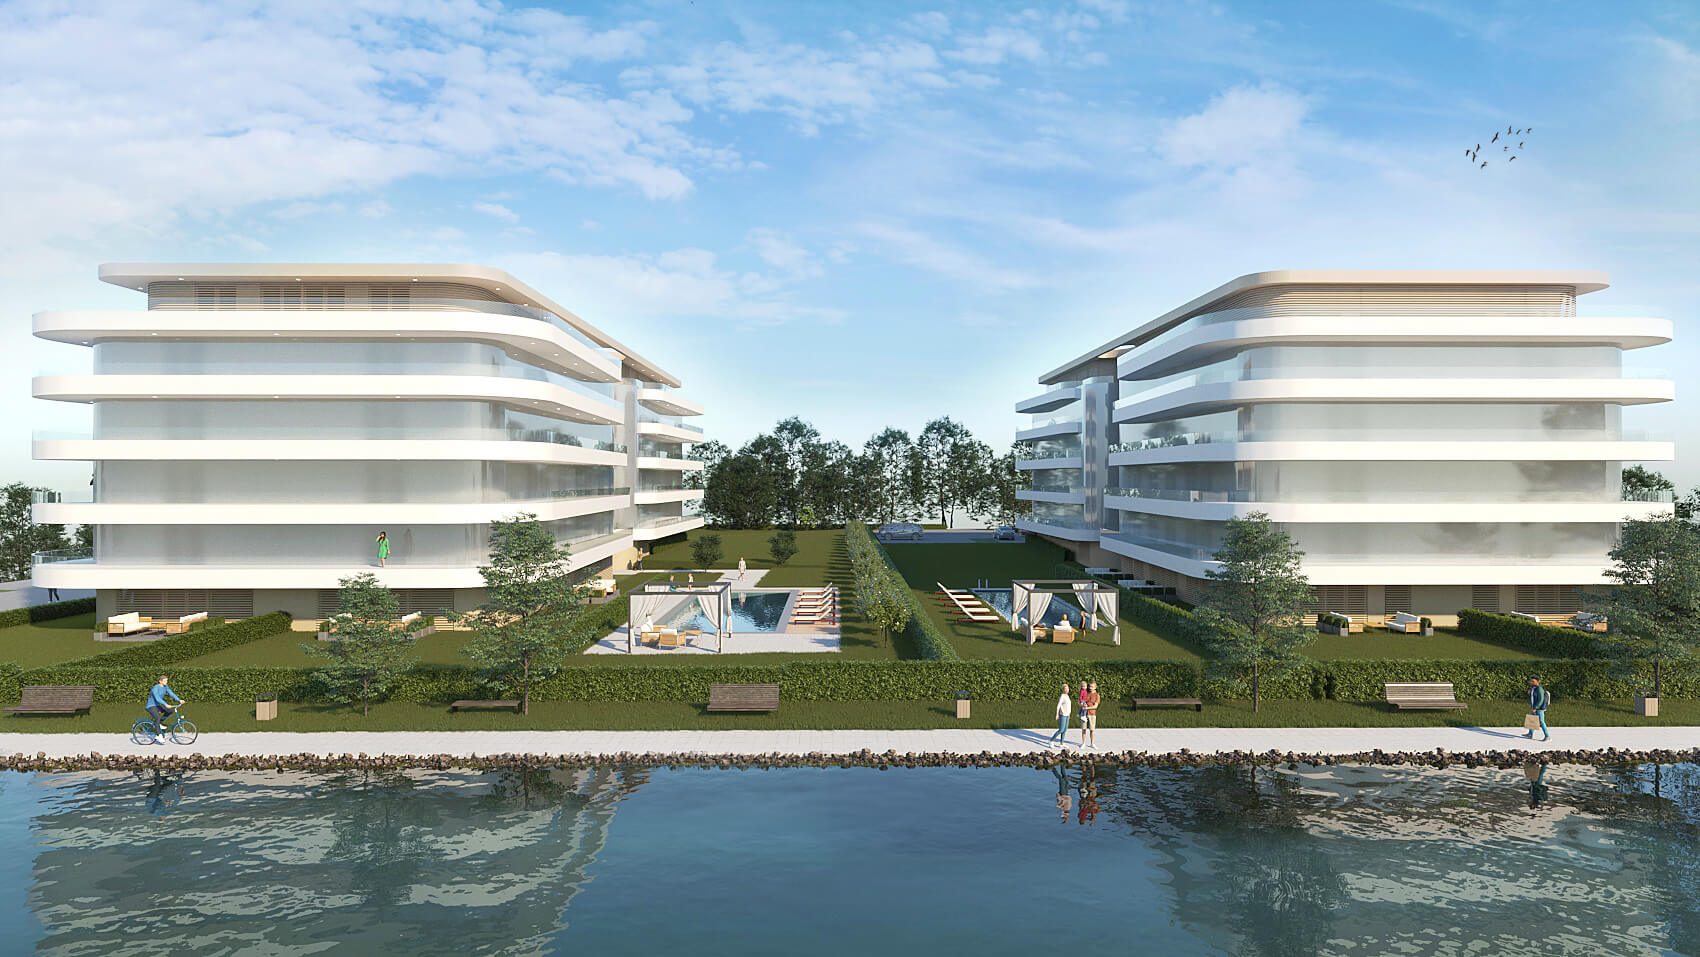 Kell egy ház, lenn a Balaton partján… – Újépítésű lakópark közvetlenül az Aranypartról